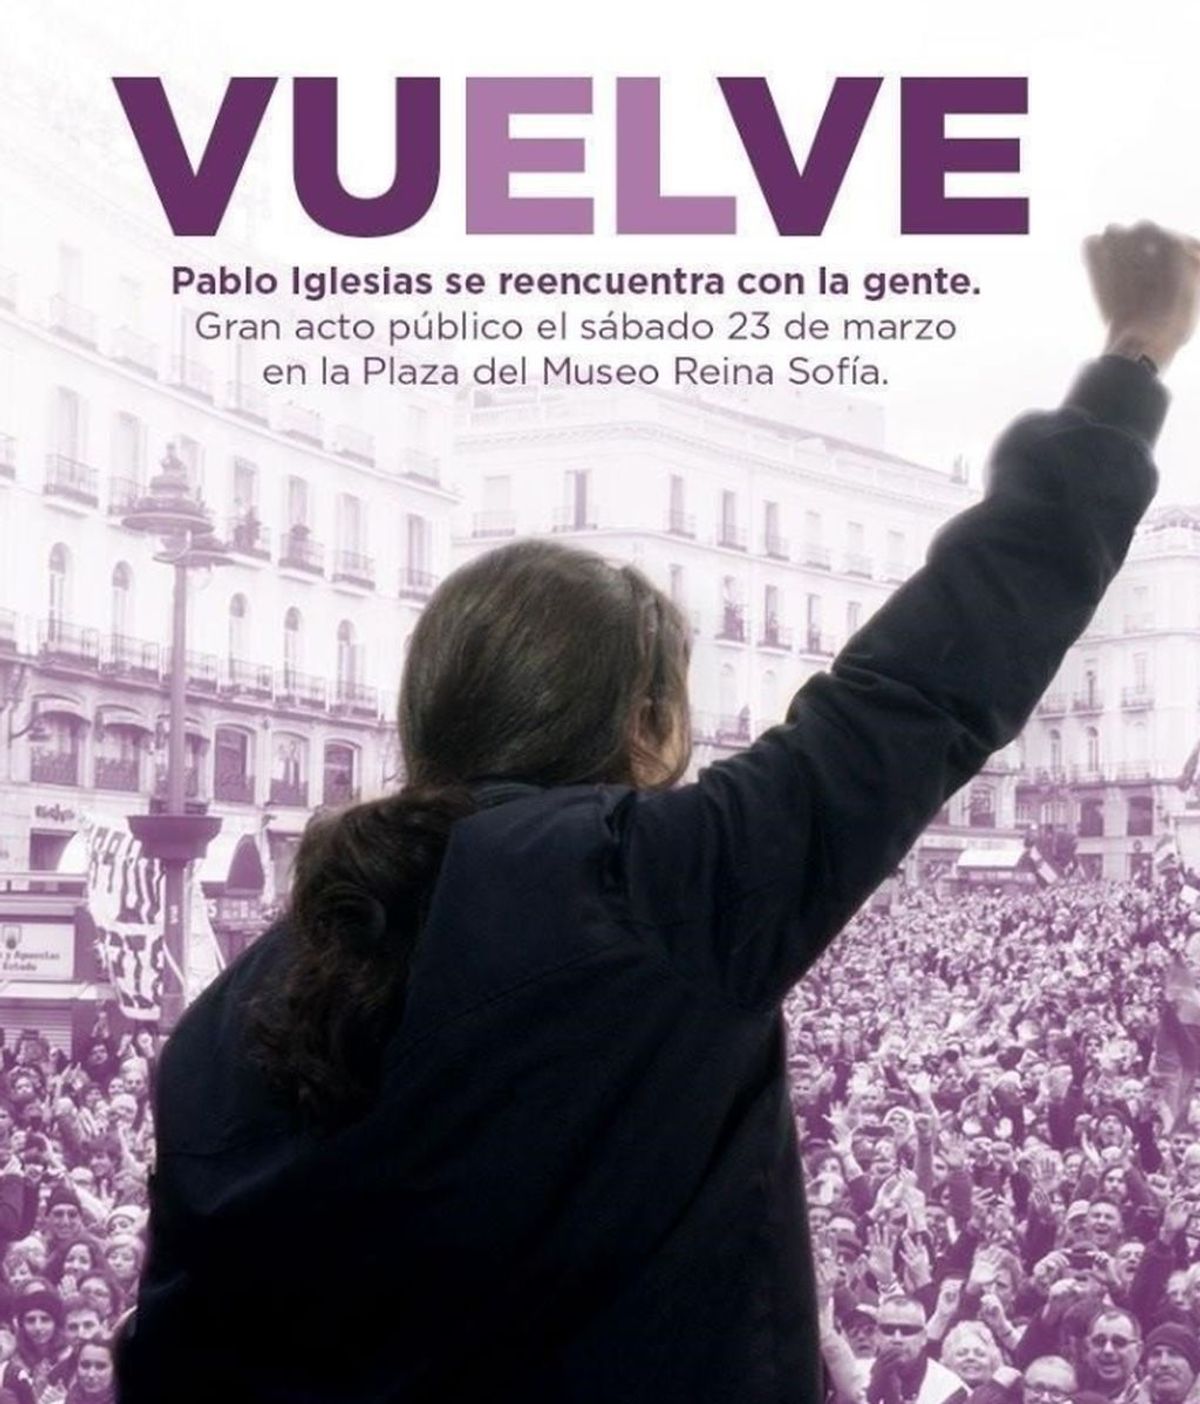 En vísperas del 8-M, Podemos tropieza con el cartel tachado de 'machista' de Pablo Iglesias